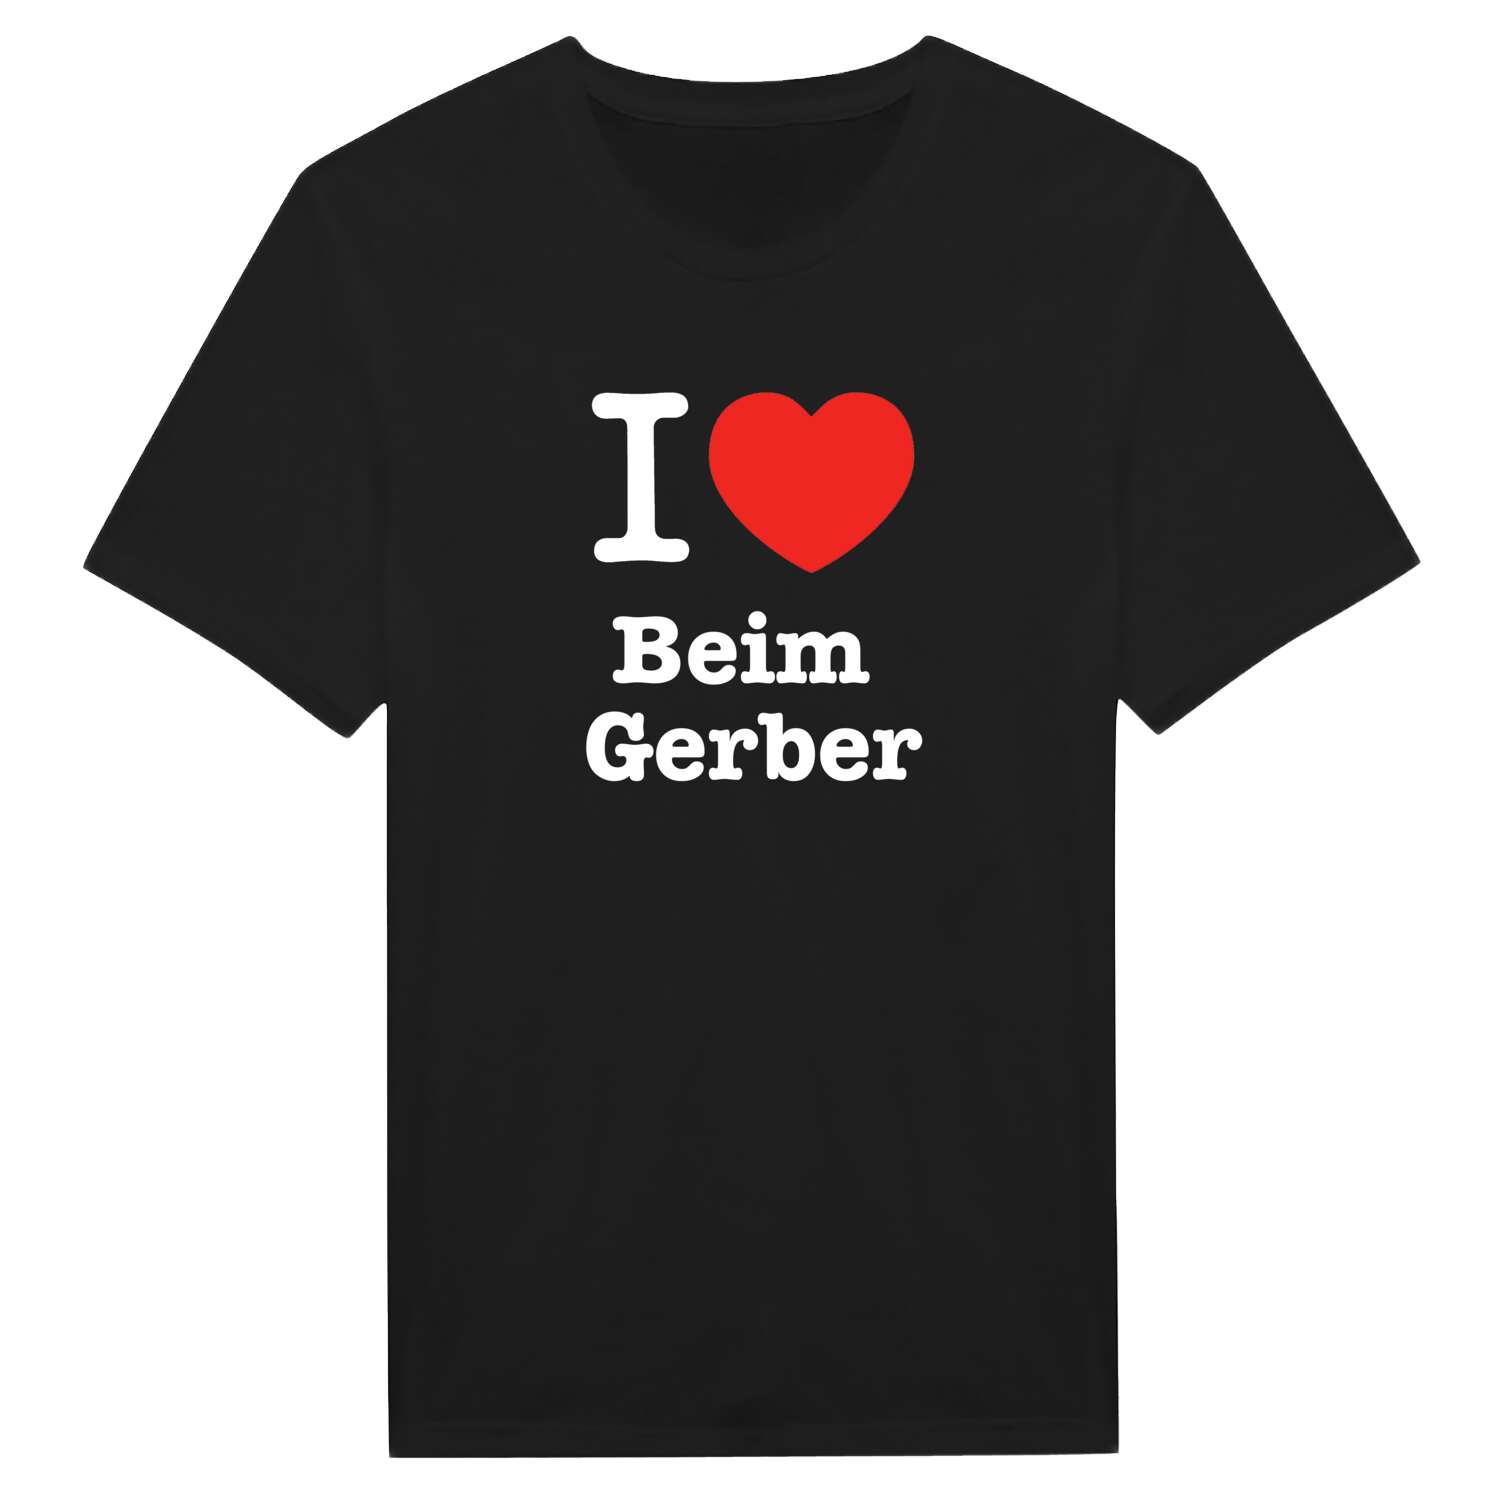 Beim Gerber T-Shirt »I love«